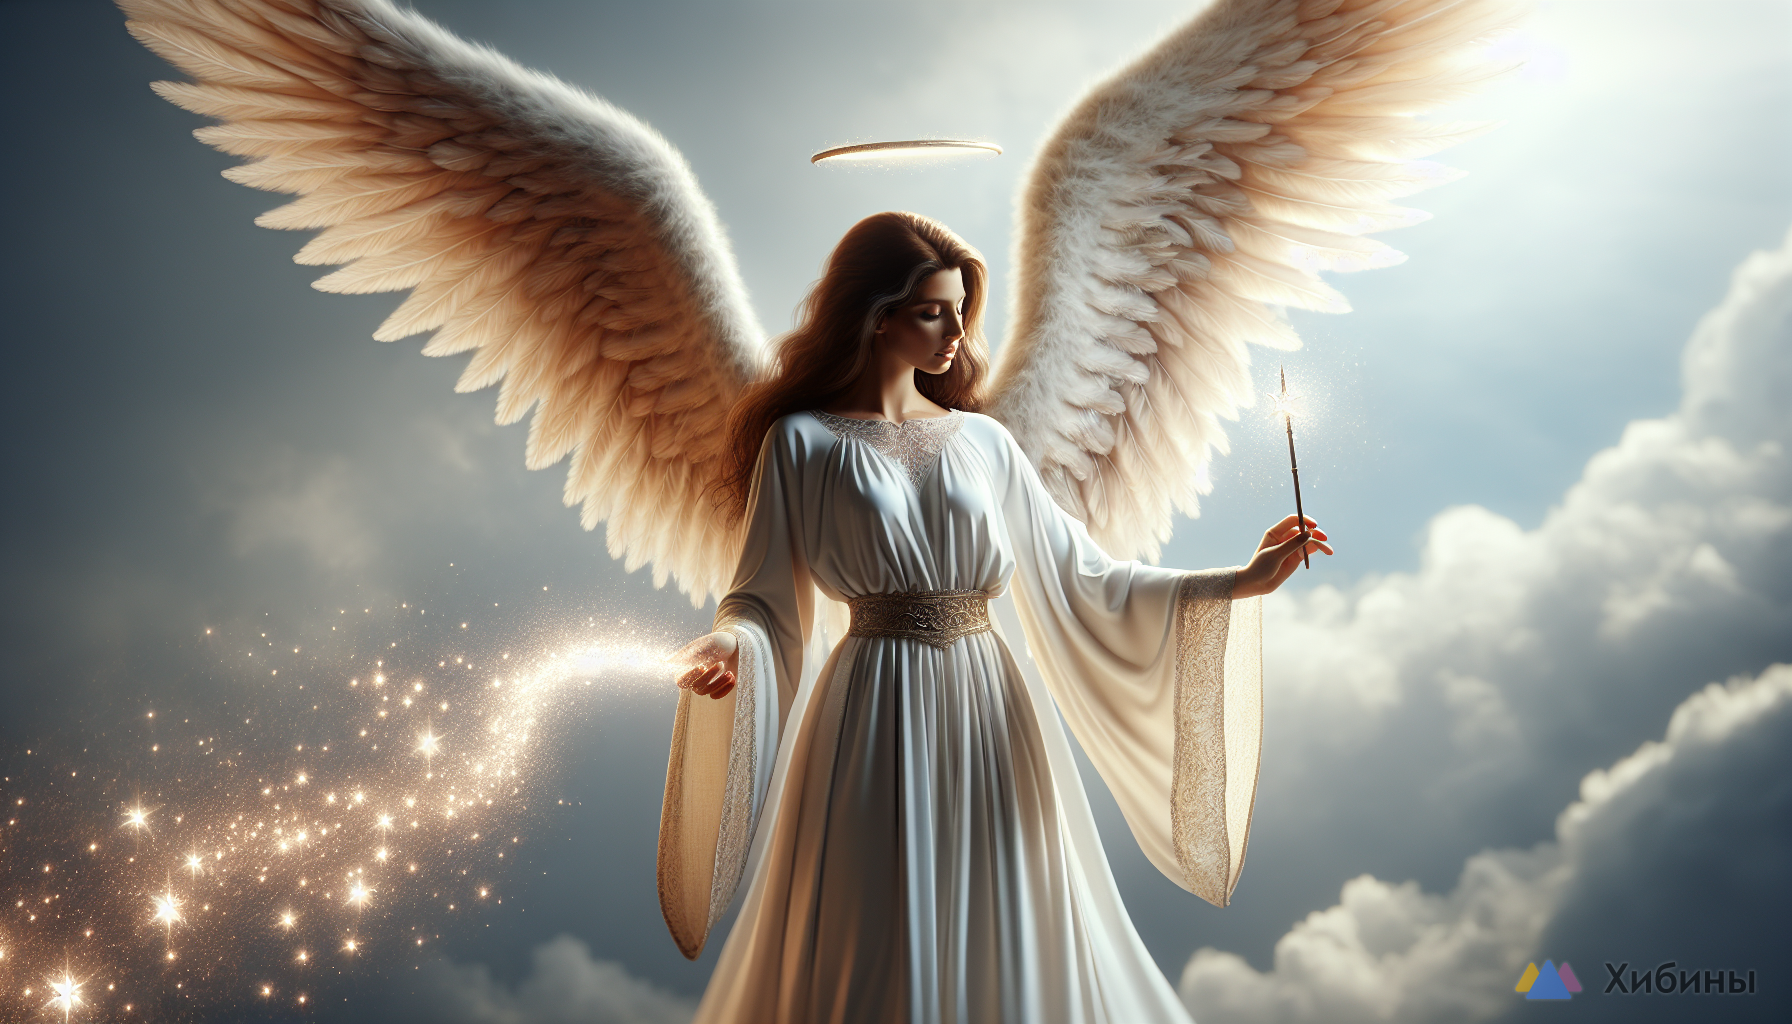 Ангелы подарят волшебную палочку: названы знаки Зодиака, у которых исполнятся все мечты — точный прогноз астрологов на май